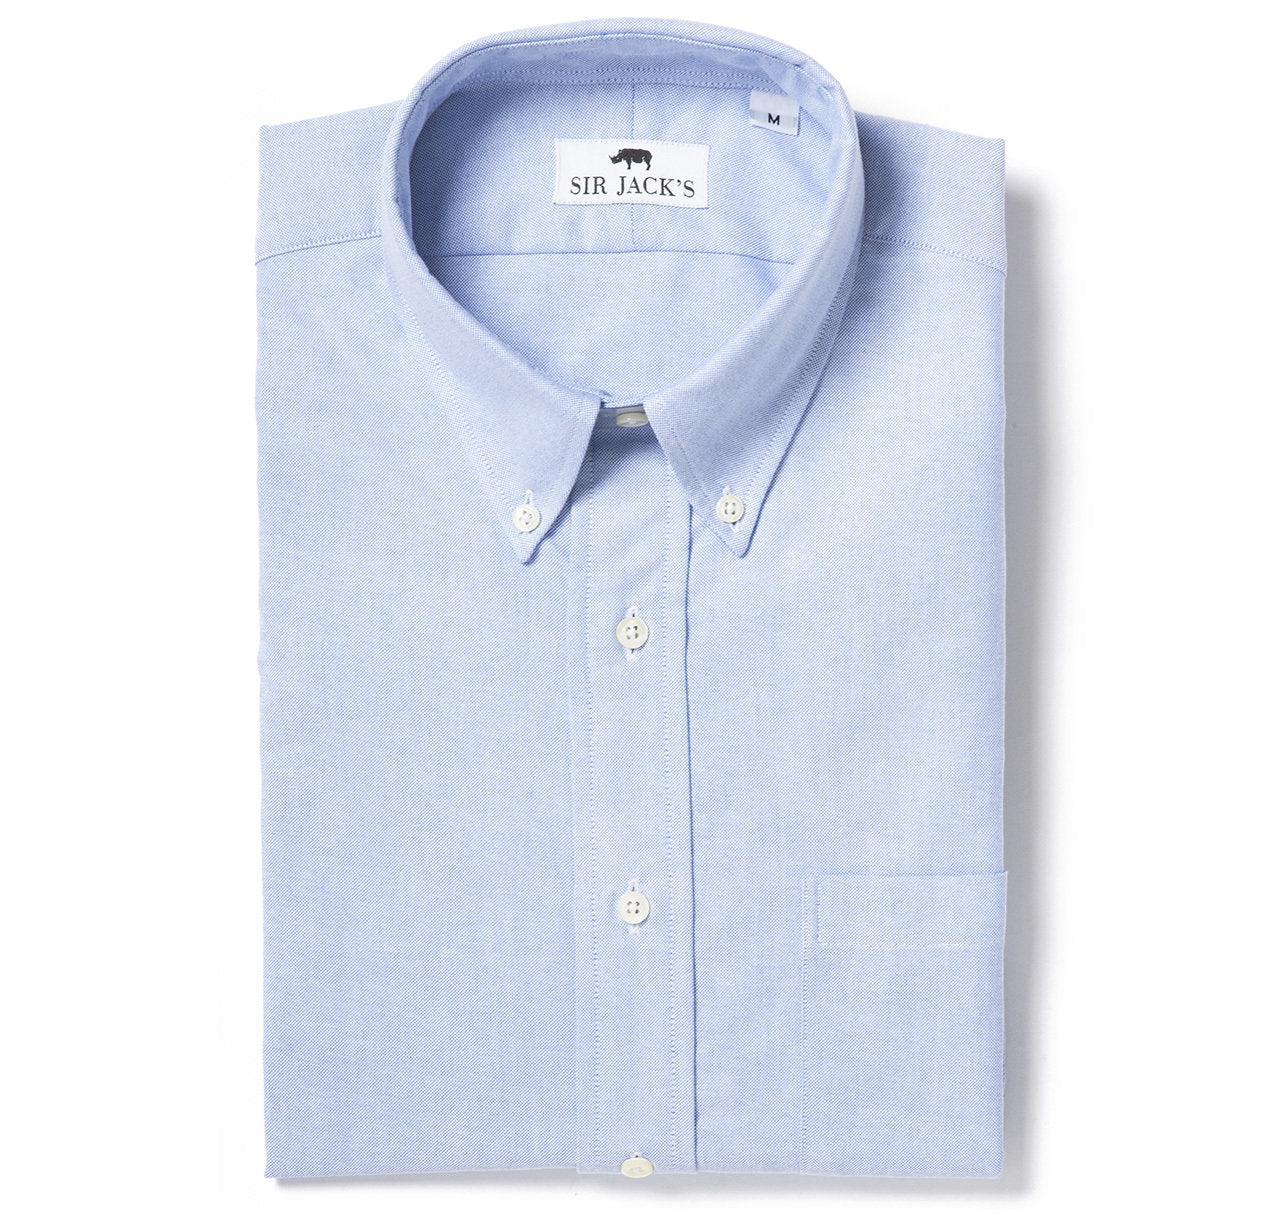 Sir Jack's Sudbury Oxford Shirt in Blue